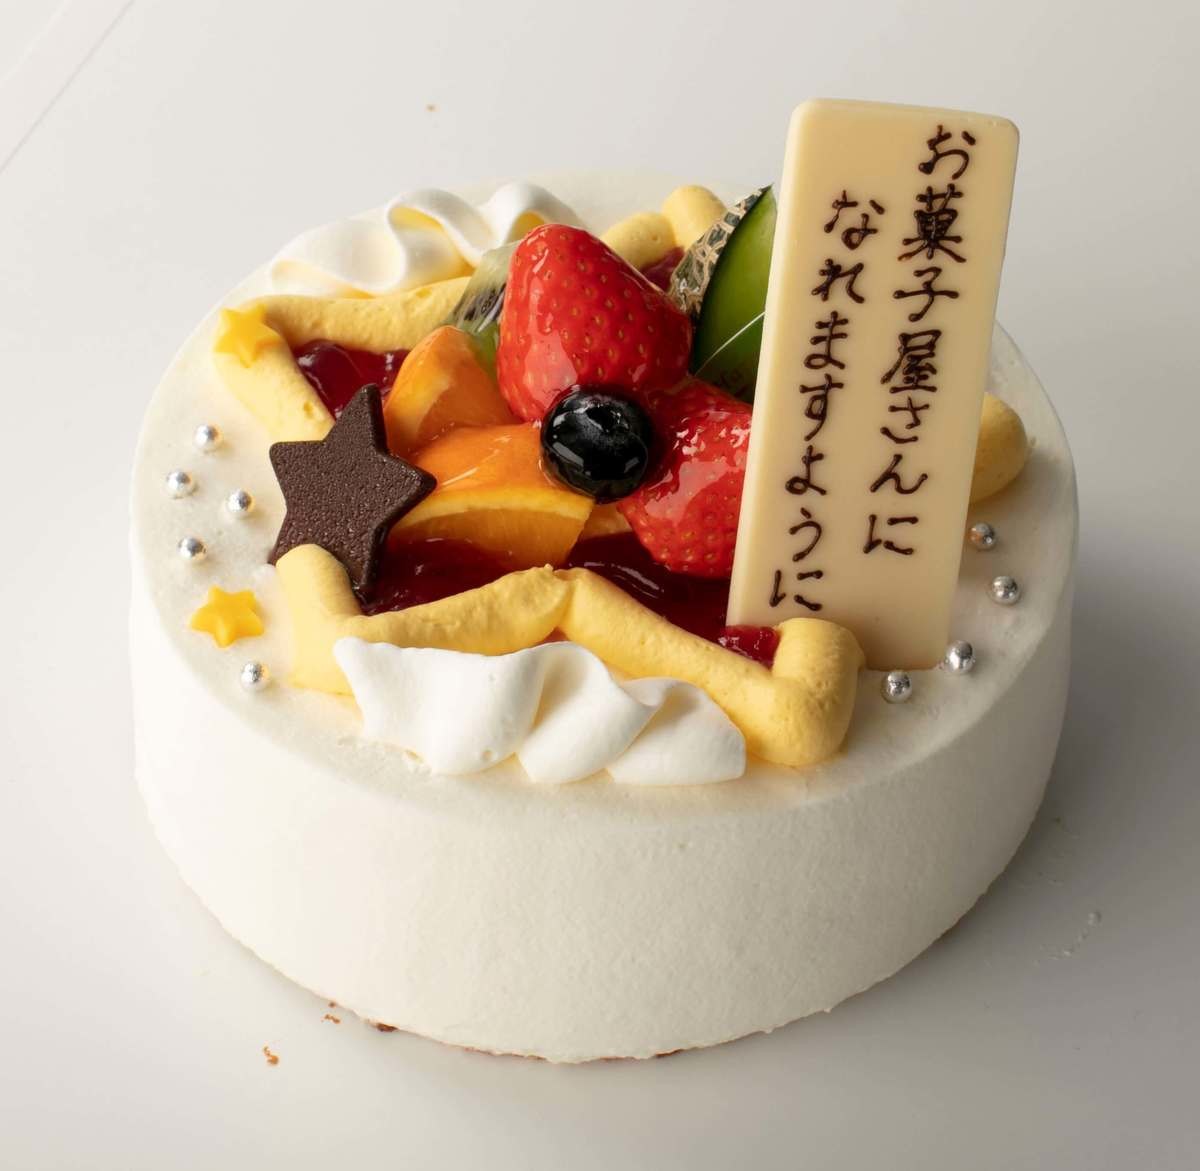 10日間しか食べられない シャトレーゼ 今だけ3連発 2 000円台ホールケーキ 最強映え ヨムーノ